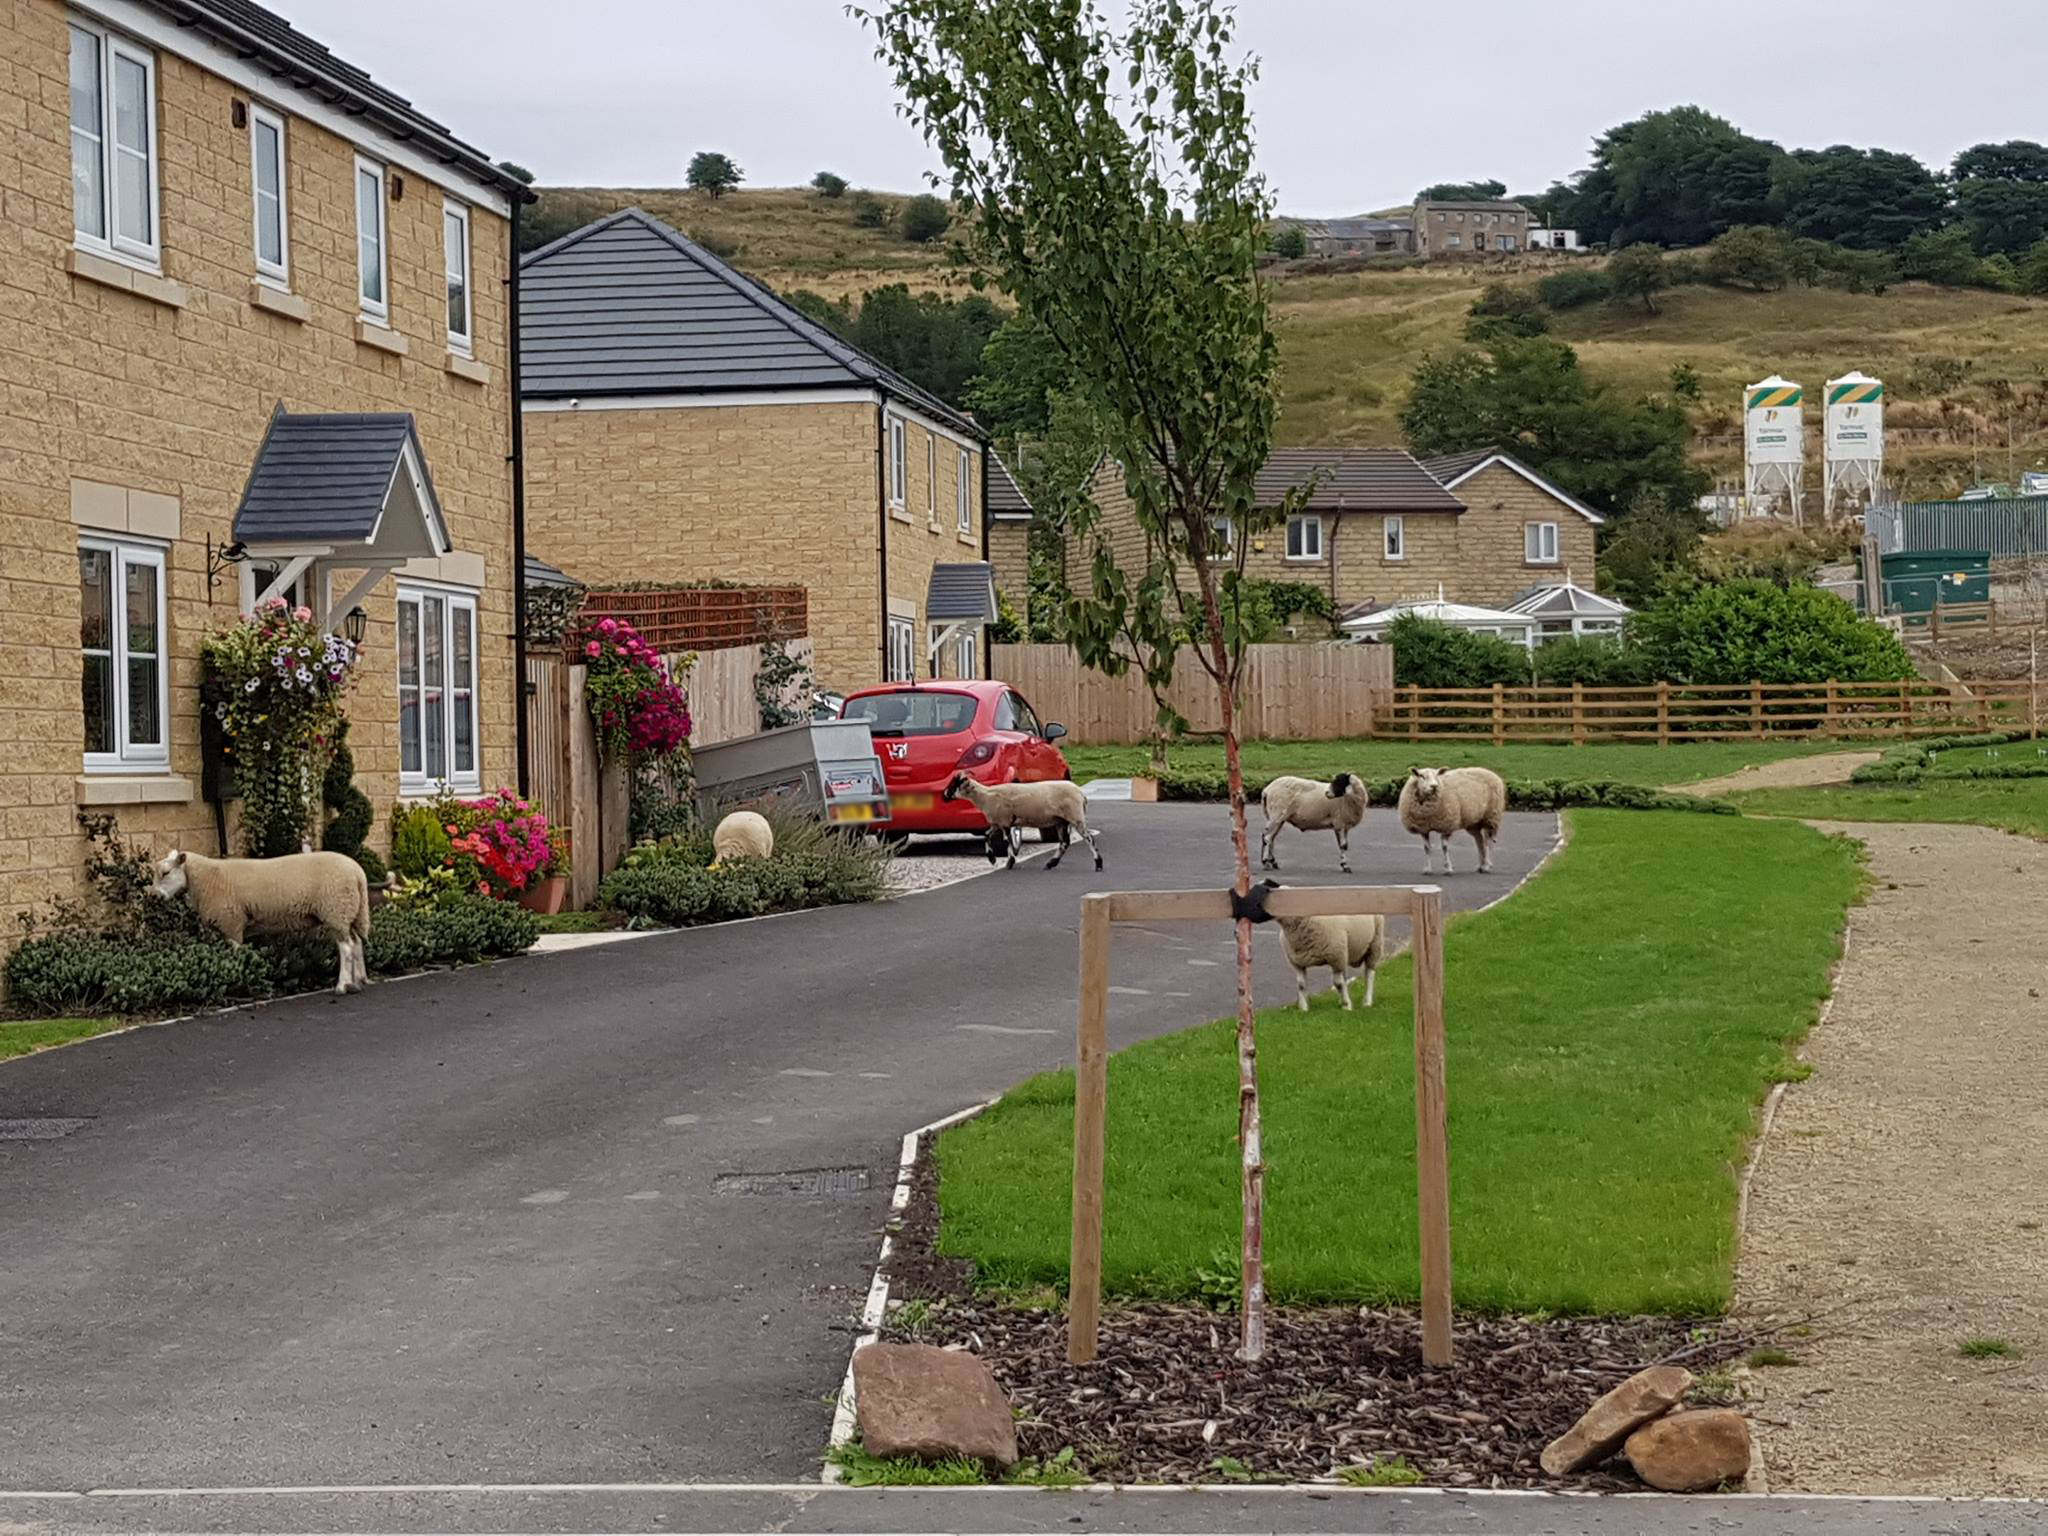 Sheep roaming on housing estate